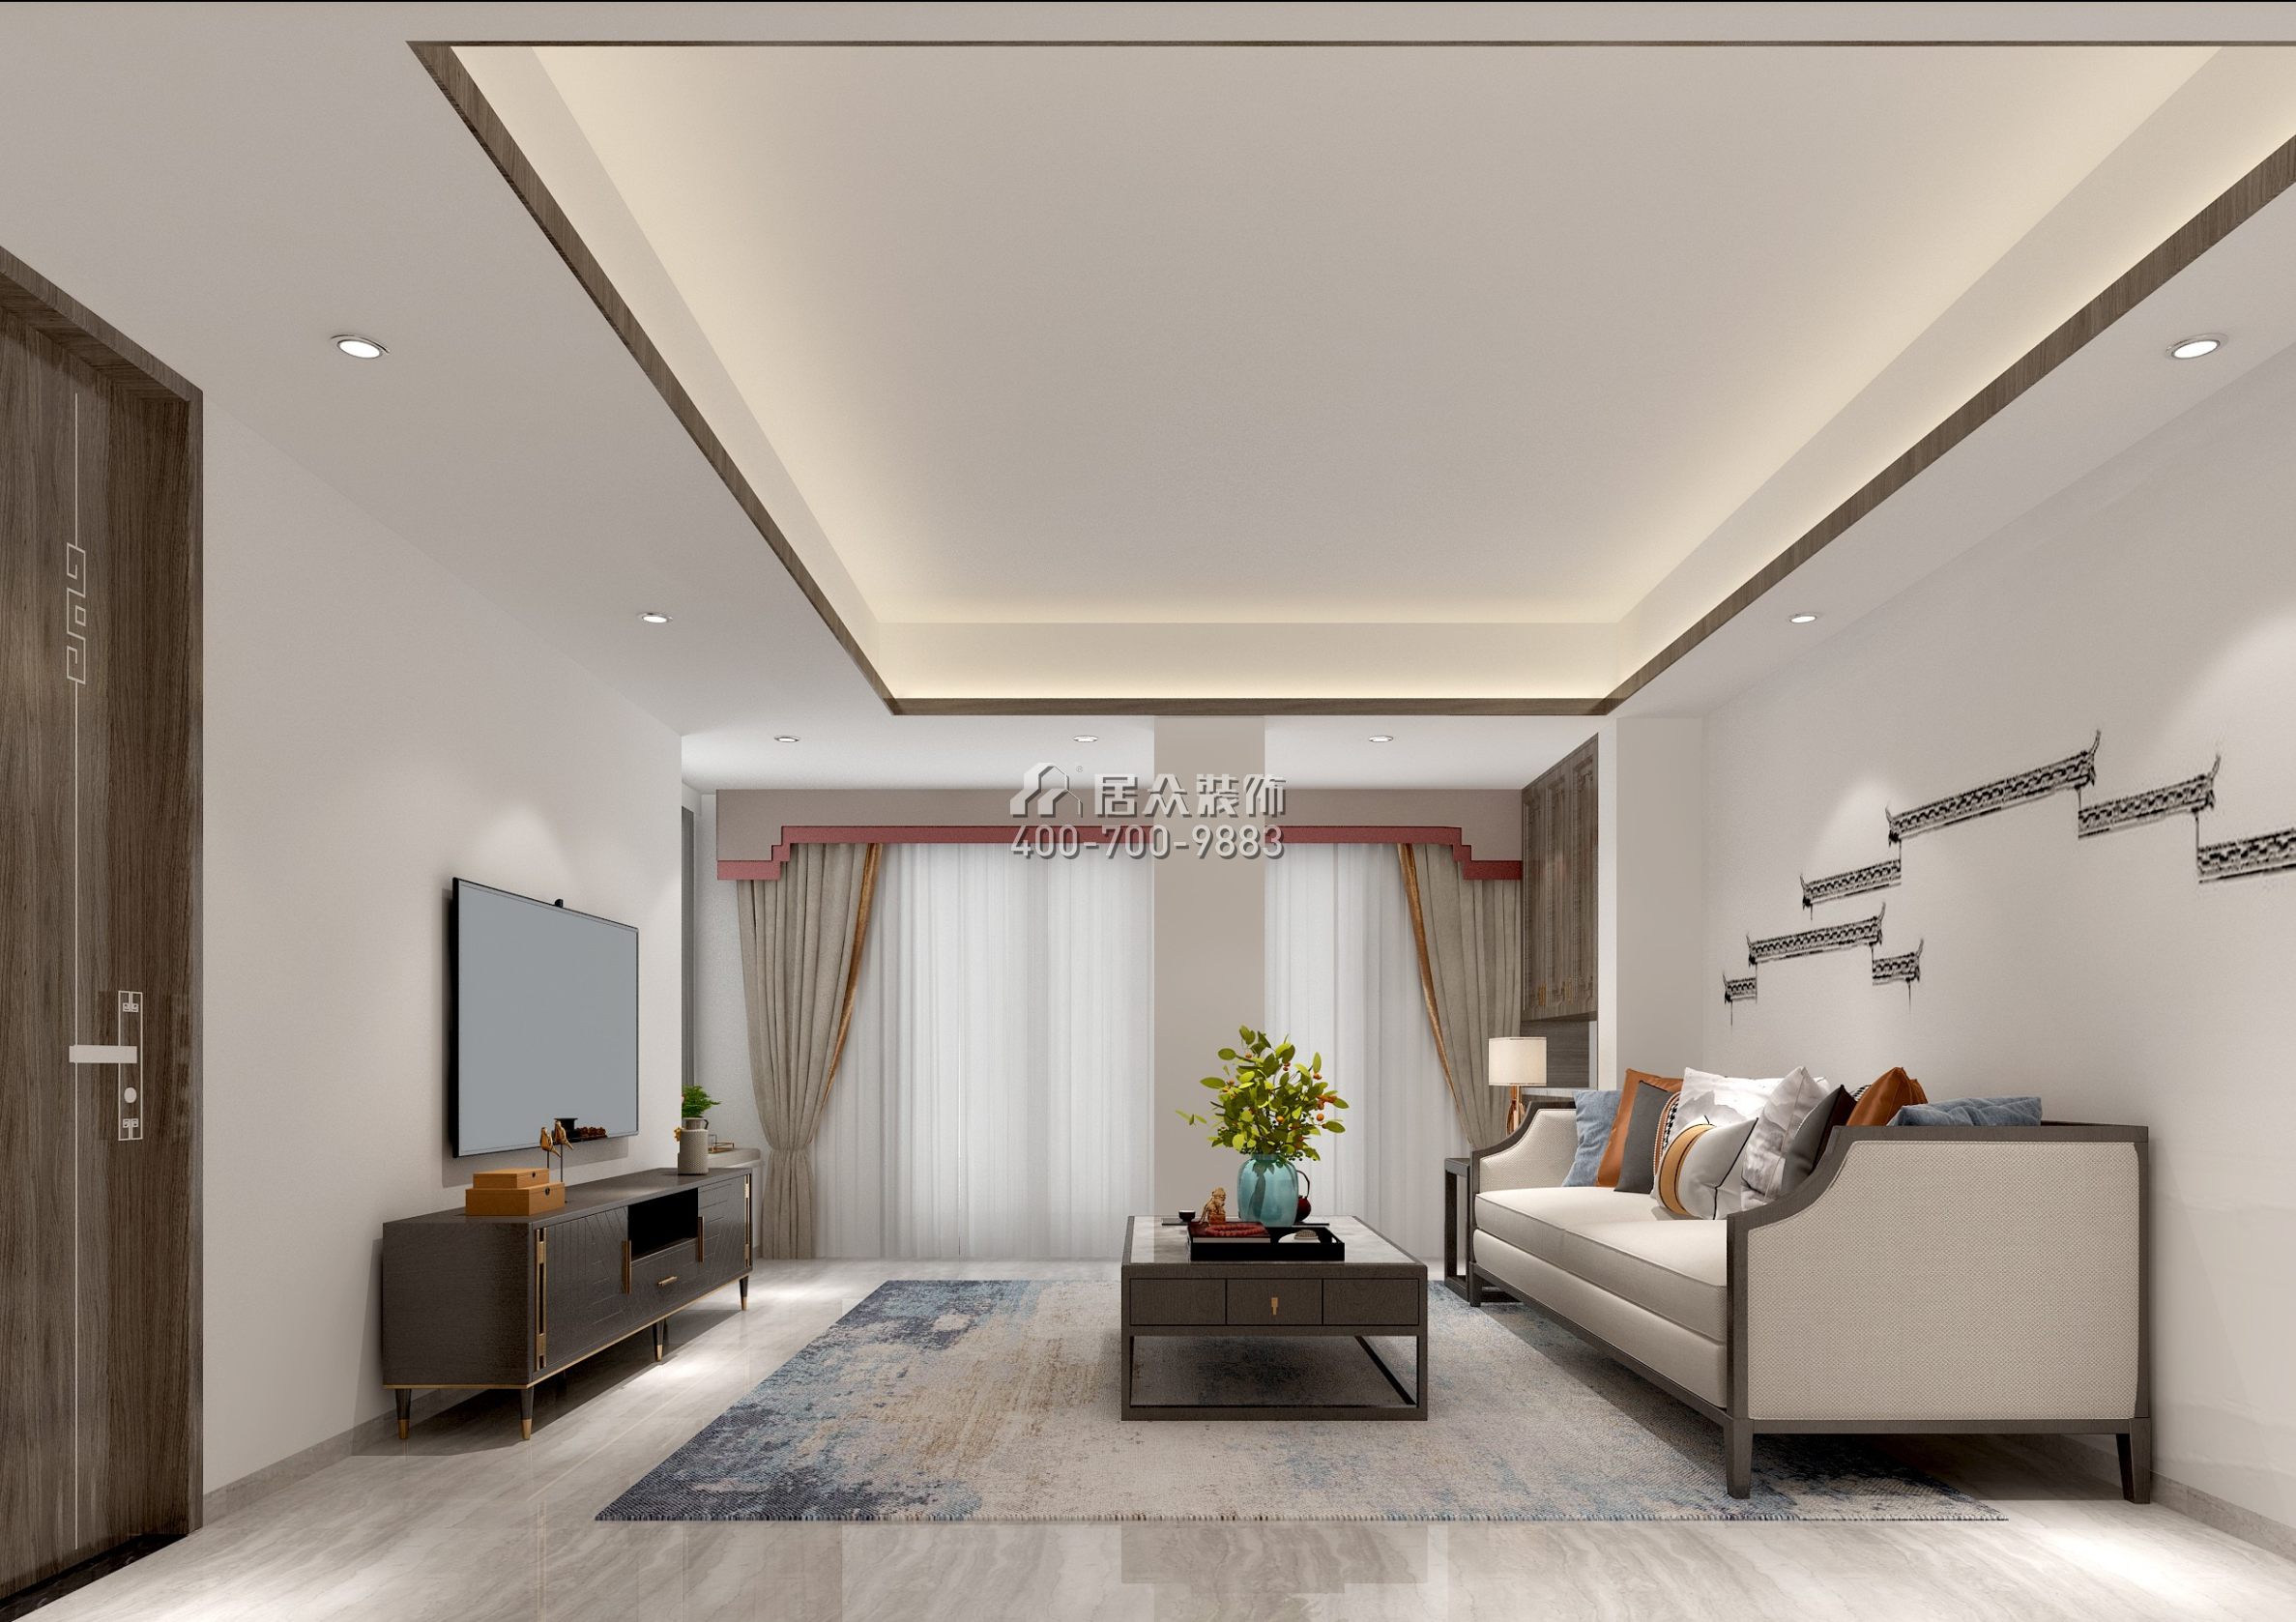 万科棠樾600平方米中式风格别墅户型卧室装修效果图